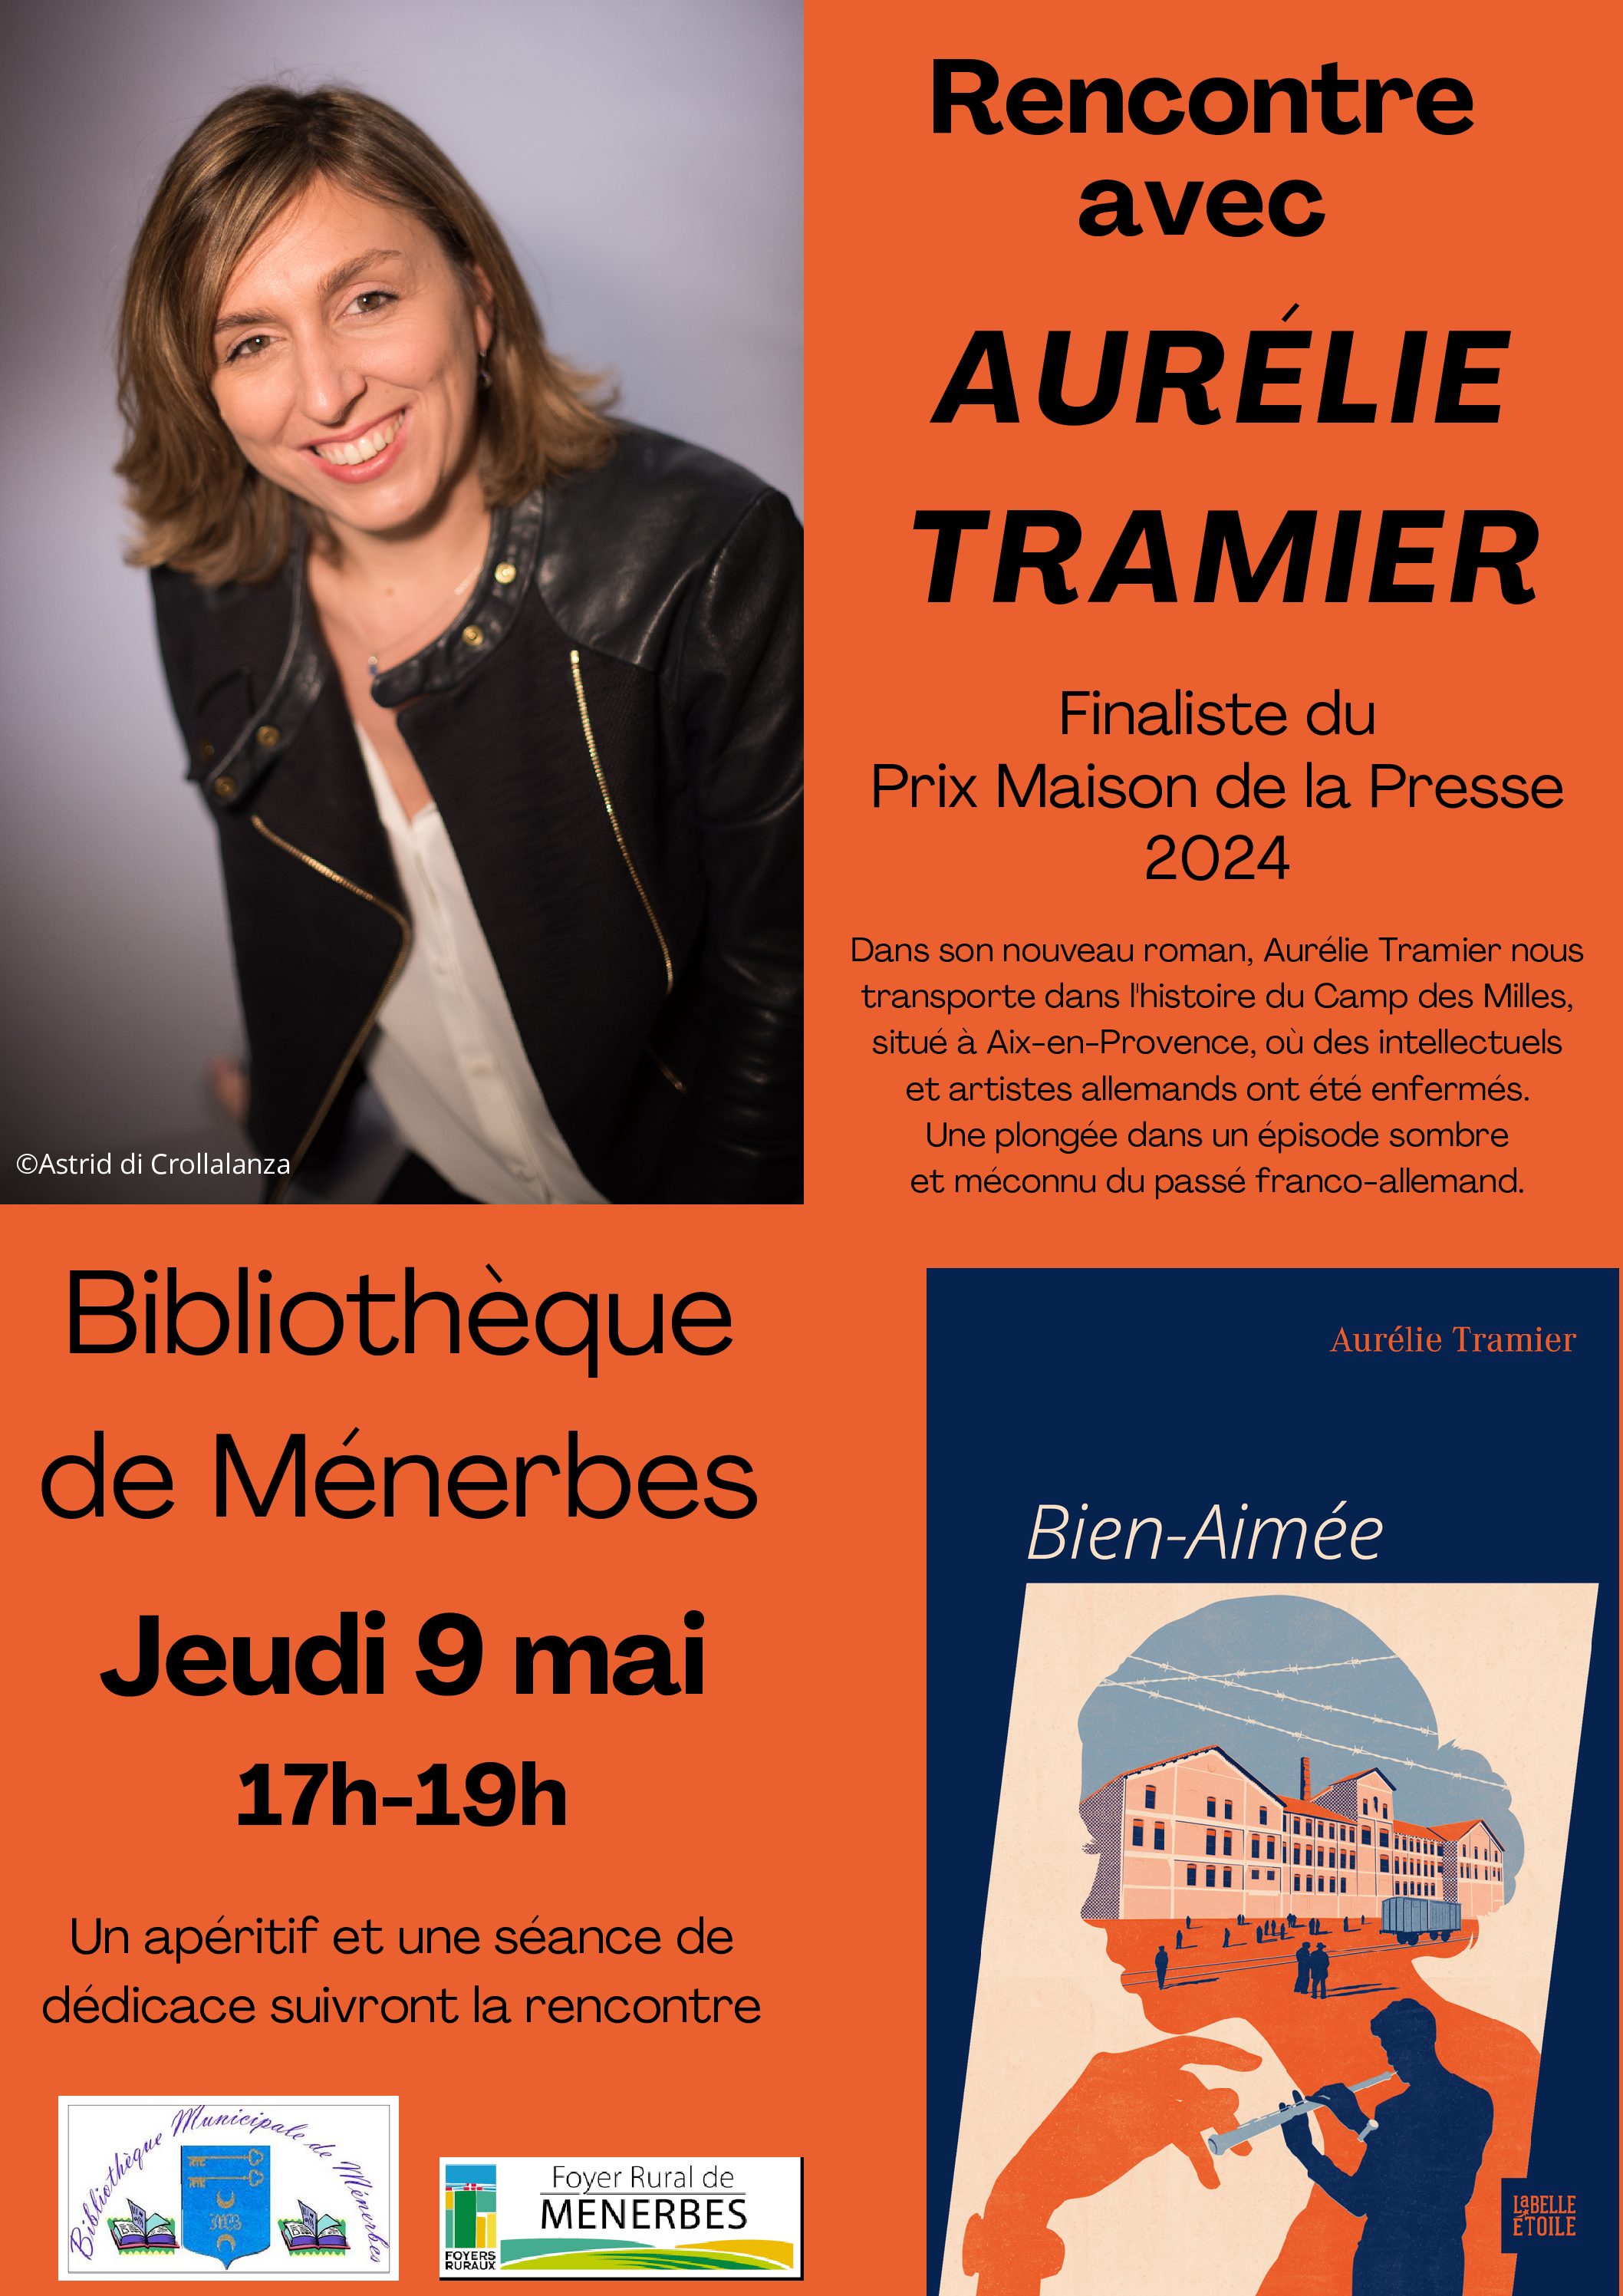 Rencontre avec Aurélie Tramier à la bibliothèque